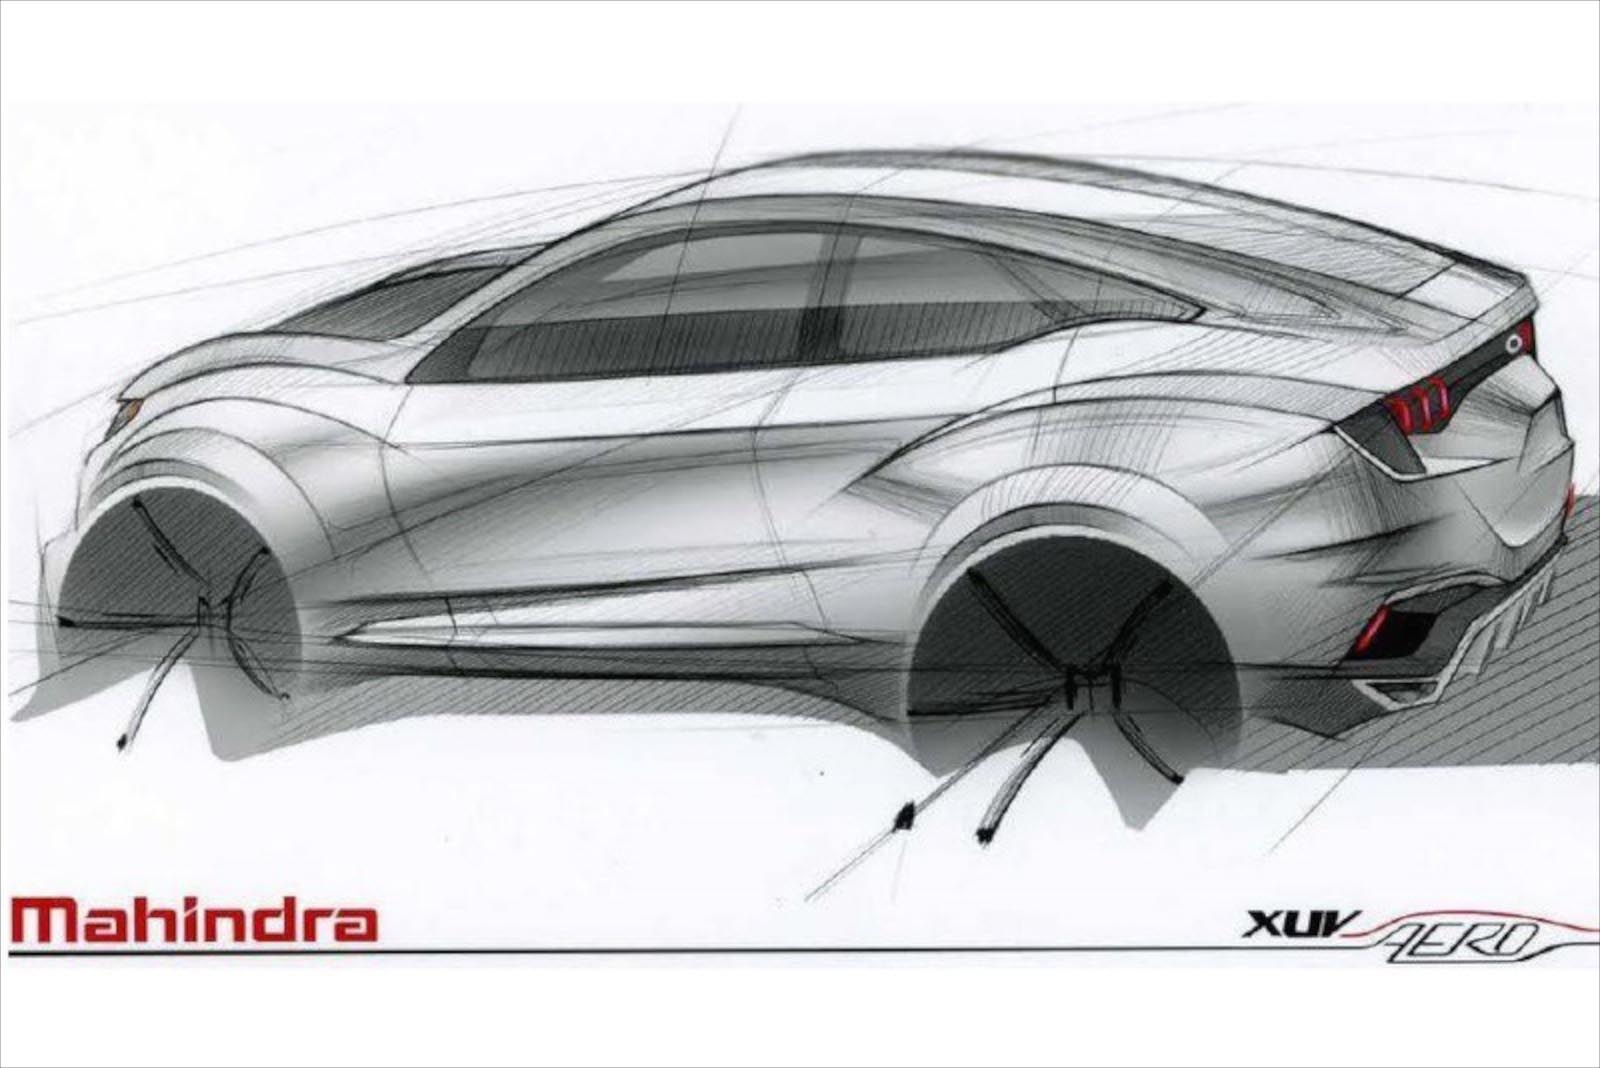 Berita, mahindra xuv aero concept sketch: Mahindra XUV Aero Jadi Bintang di Delhi Auto Expo 2016